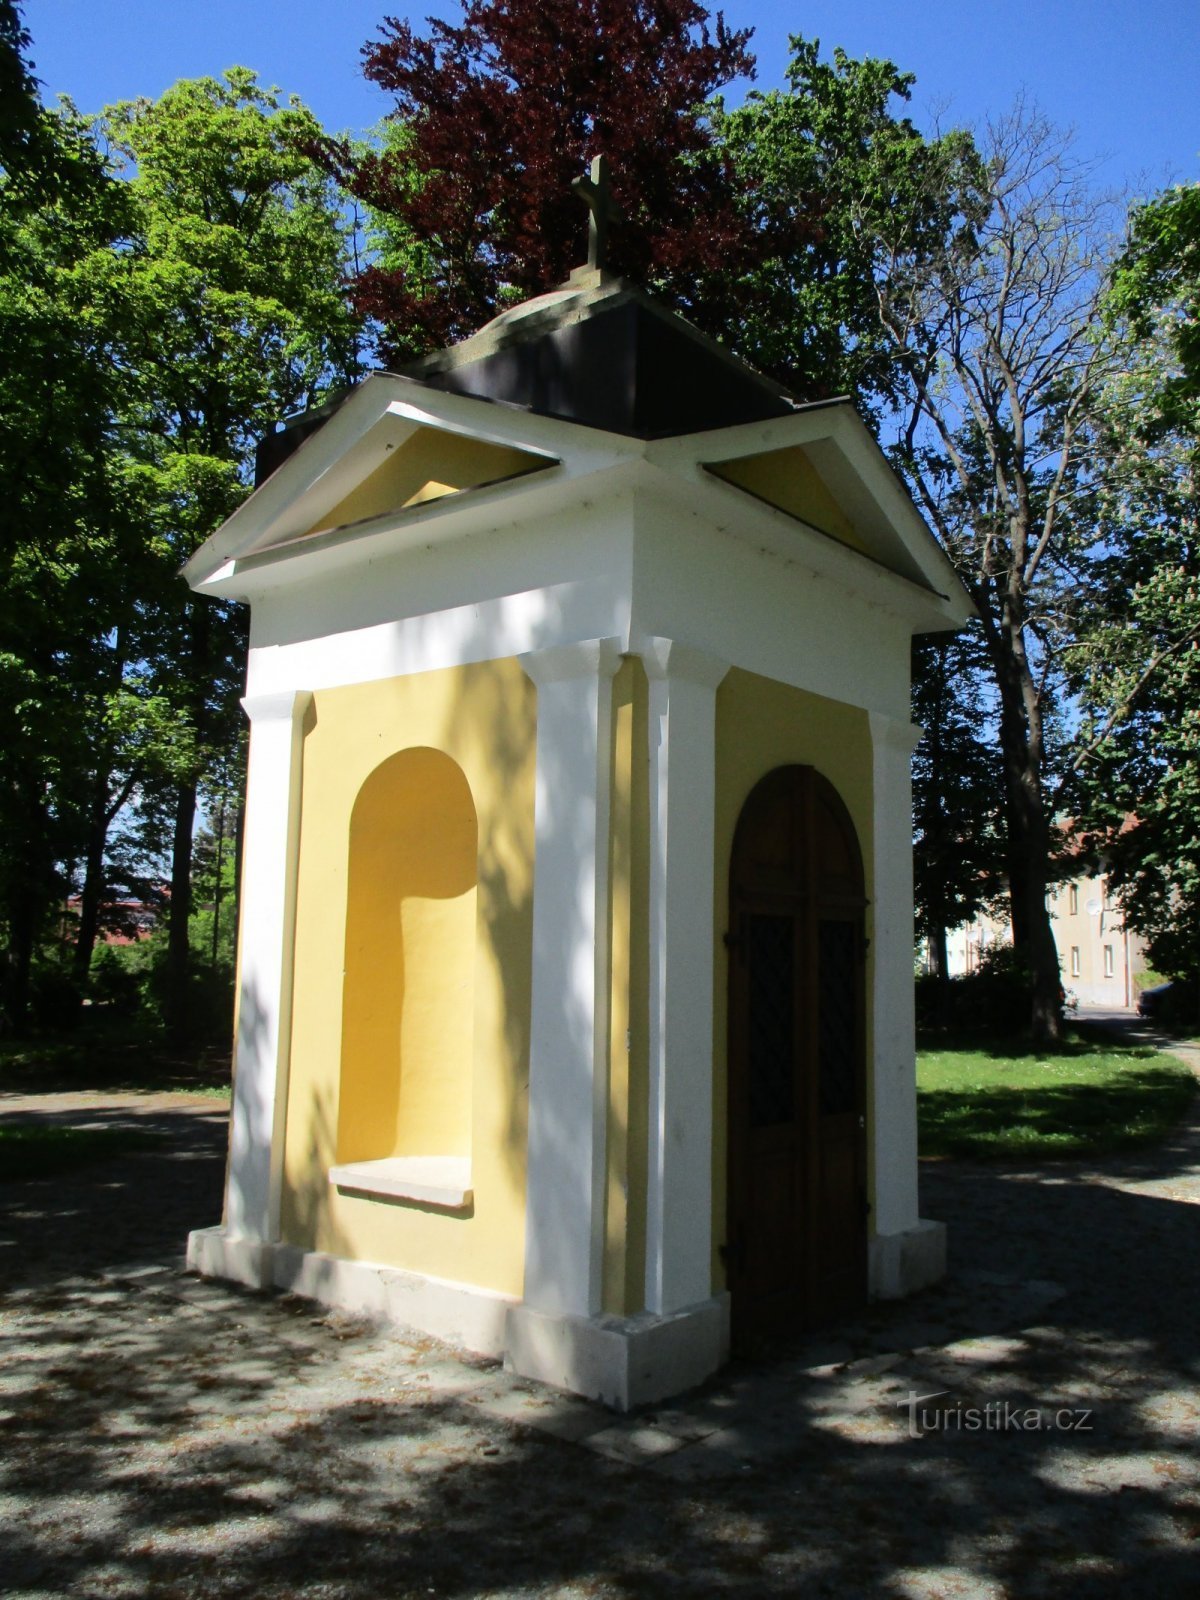 Kaplica w Archlebowych sadach (Dobruška, 18.5.2020)